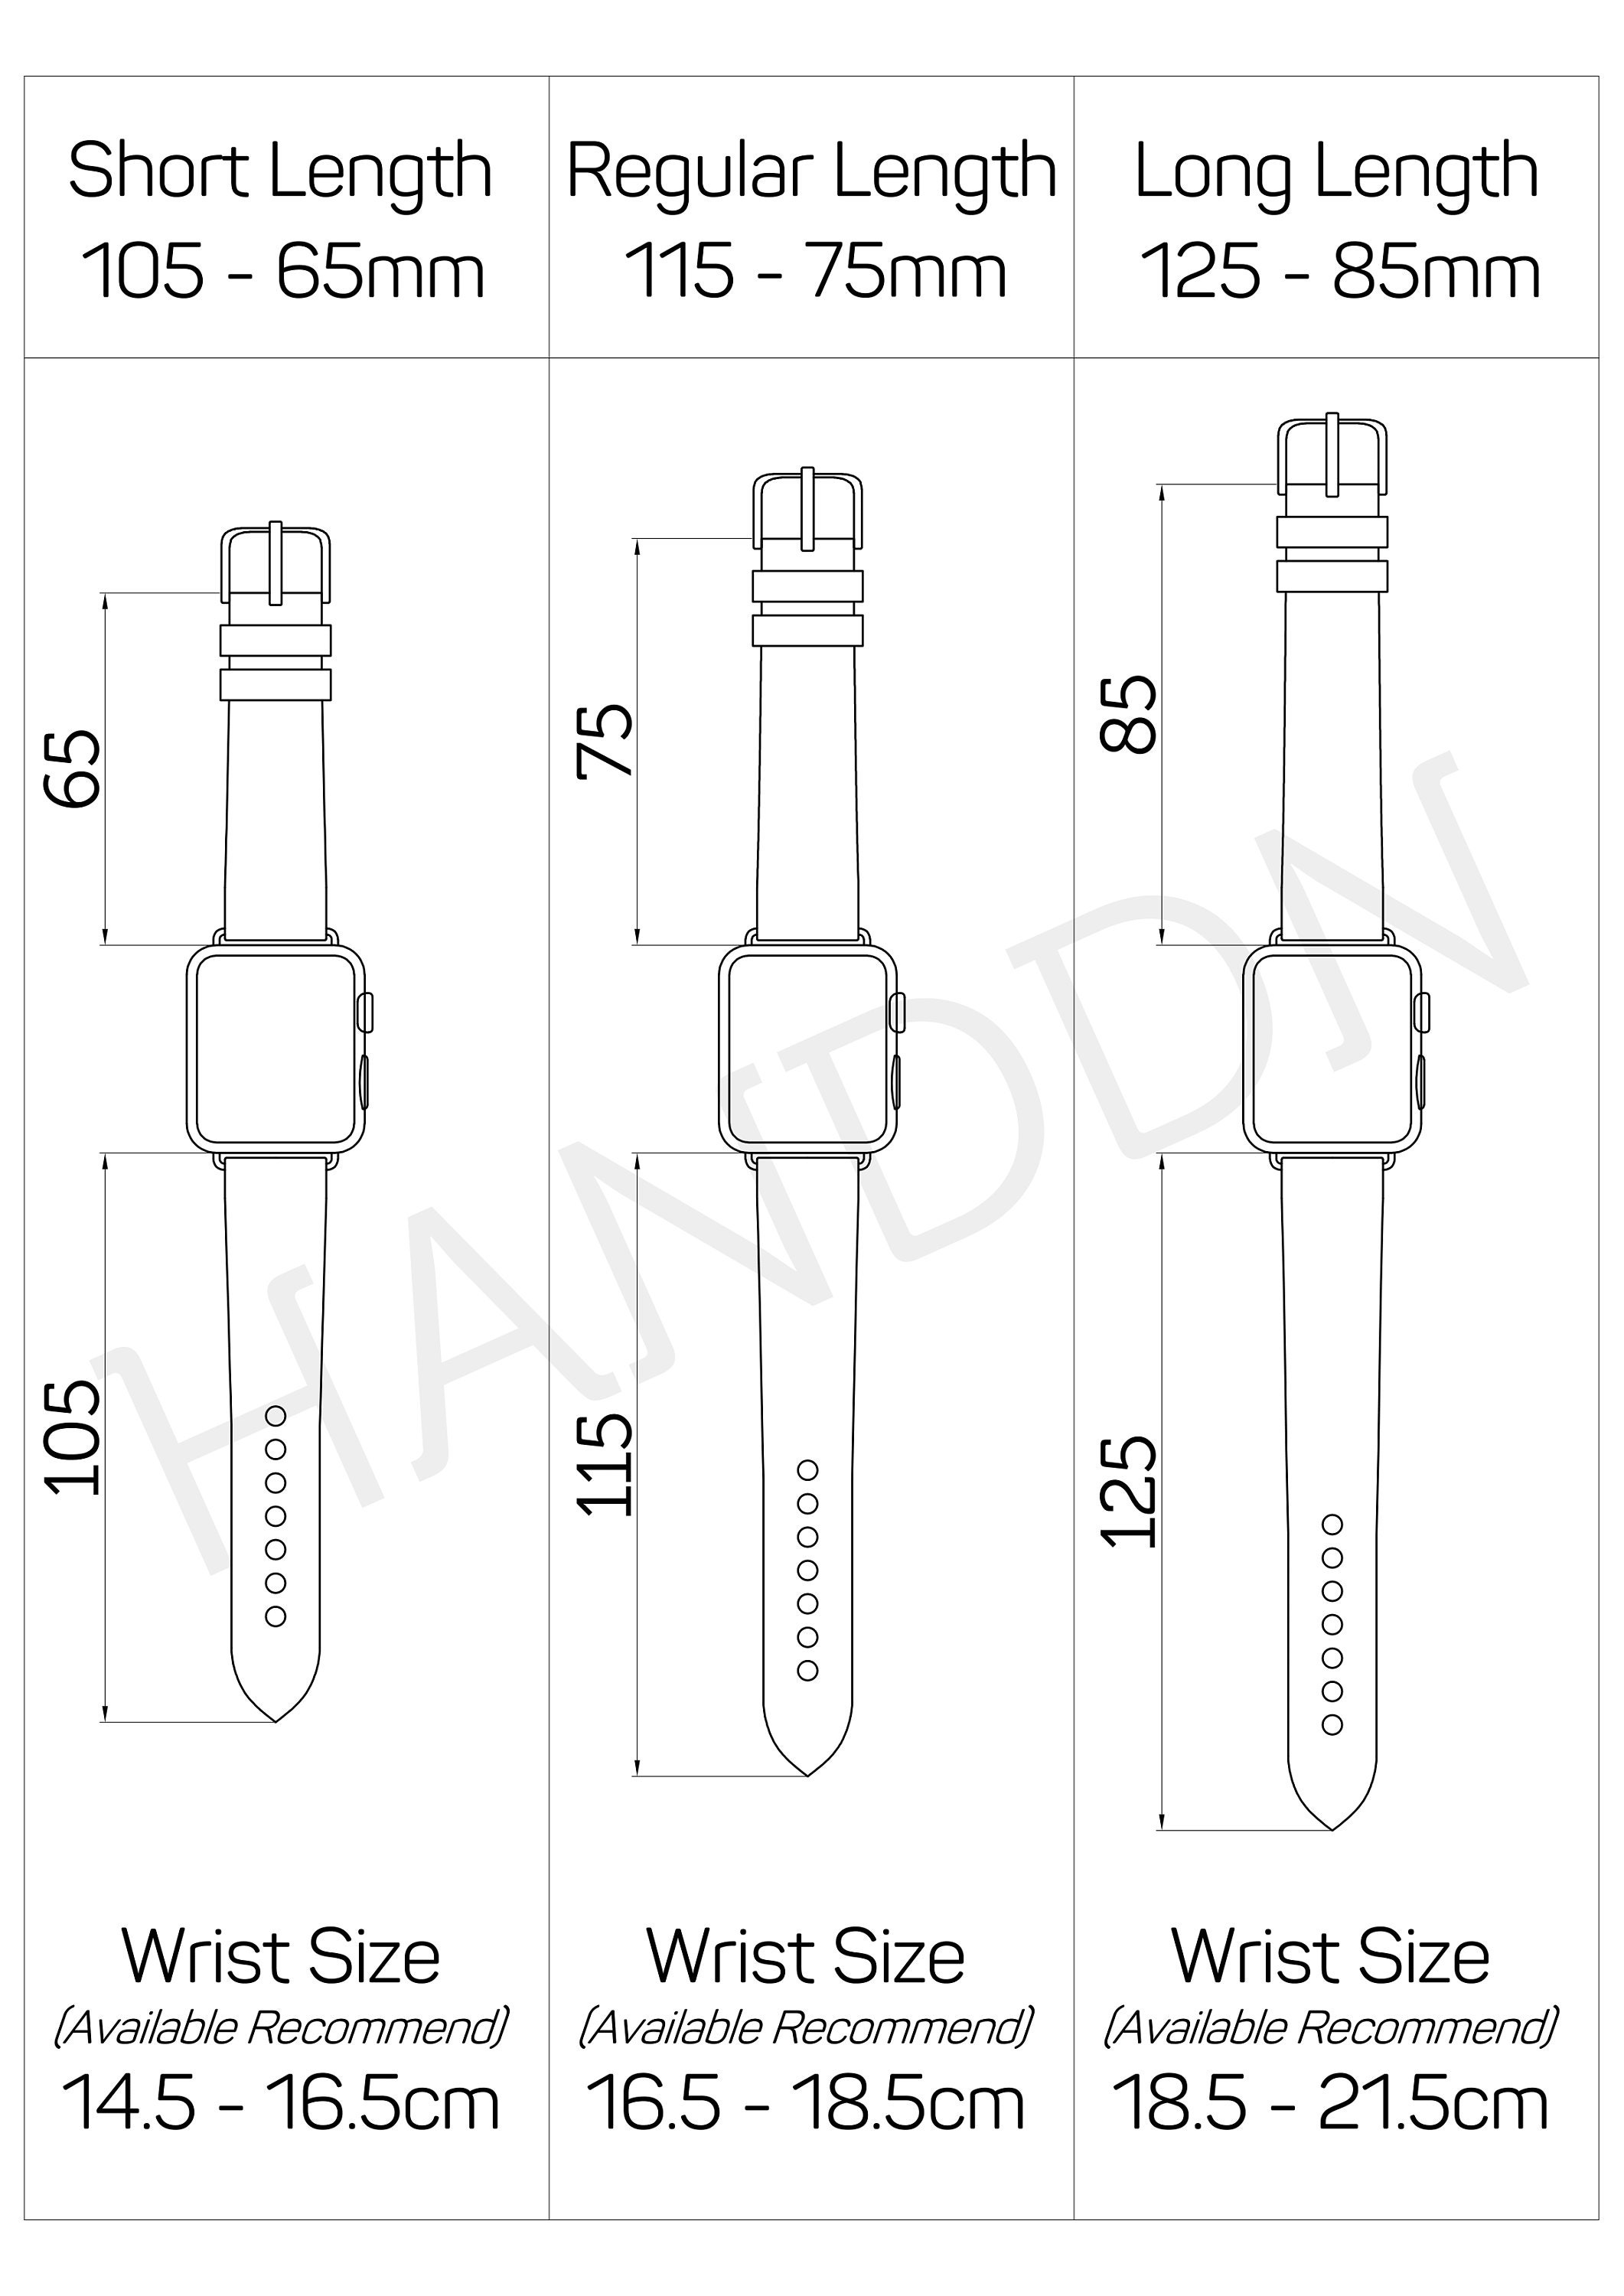 Handdn White Calfskin Apple Watch Band – Waves Texture